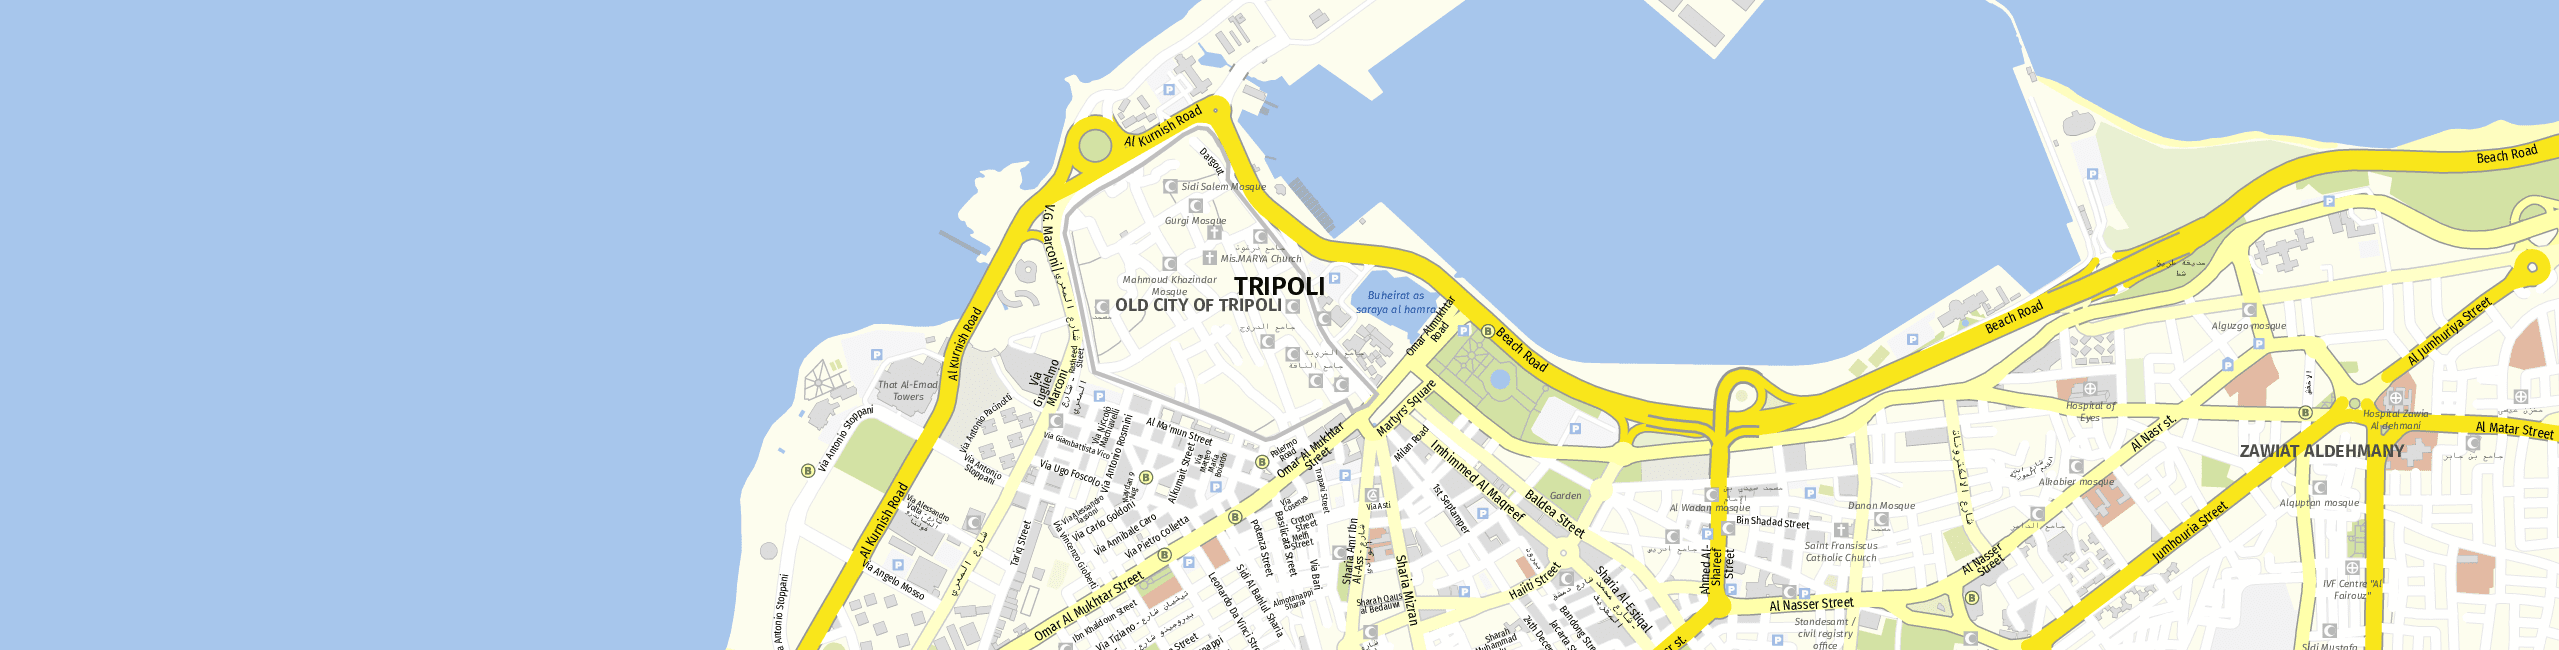 Stadtplan Tripolis zum Downloaden.